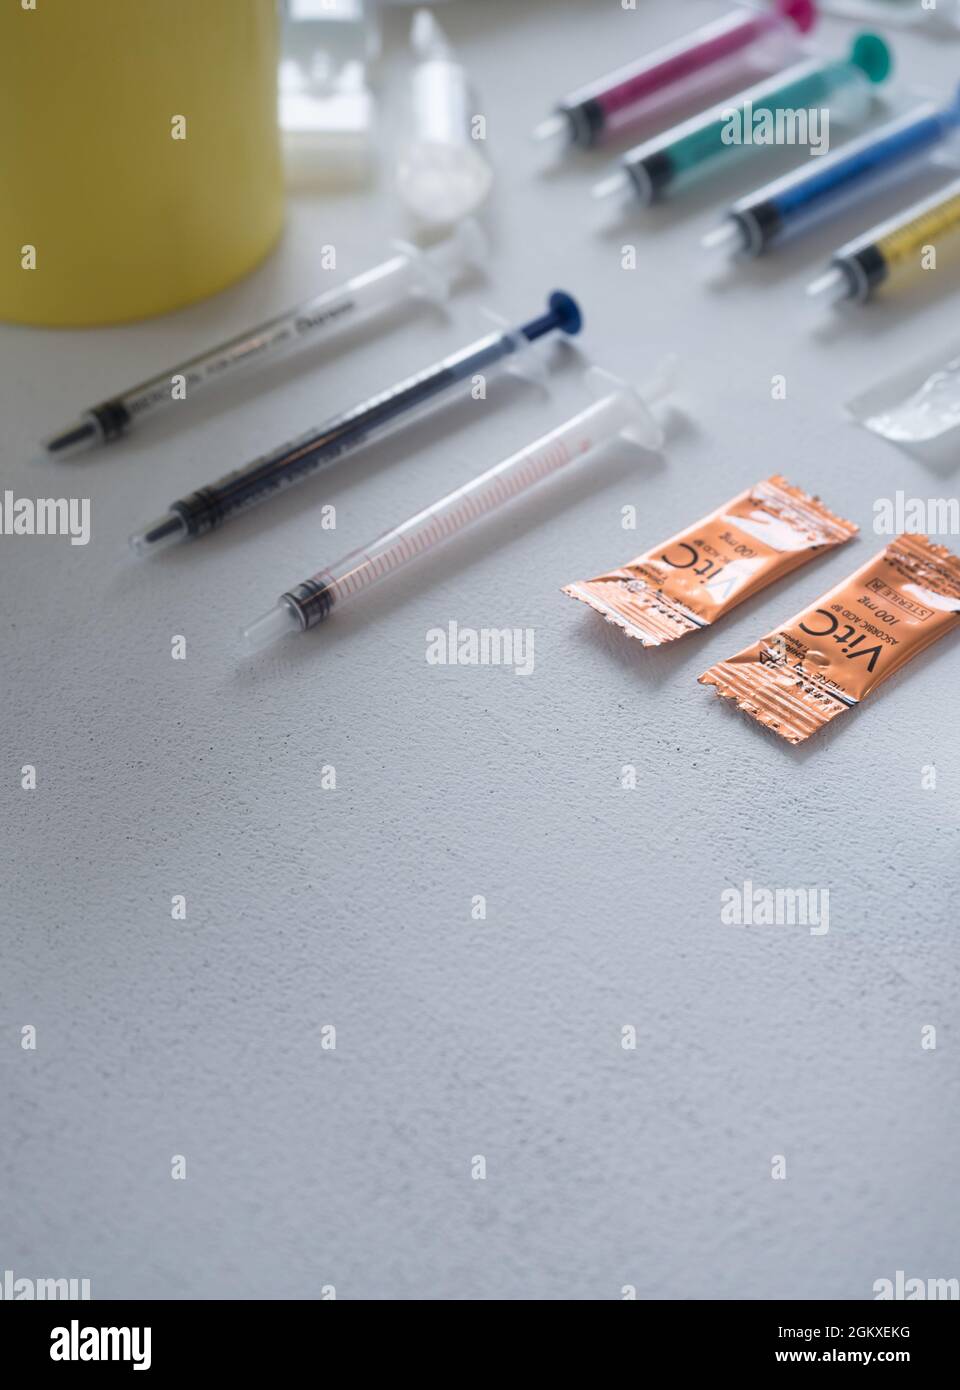 Opiat-Materialien für den Drogenkonsum unter kontrollierter Umgebung zur Hilfe Stockfoto